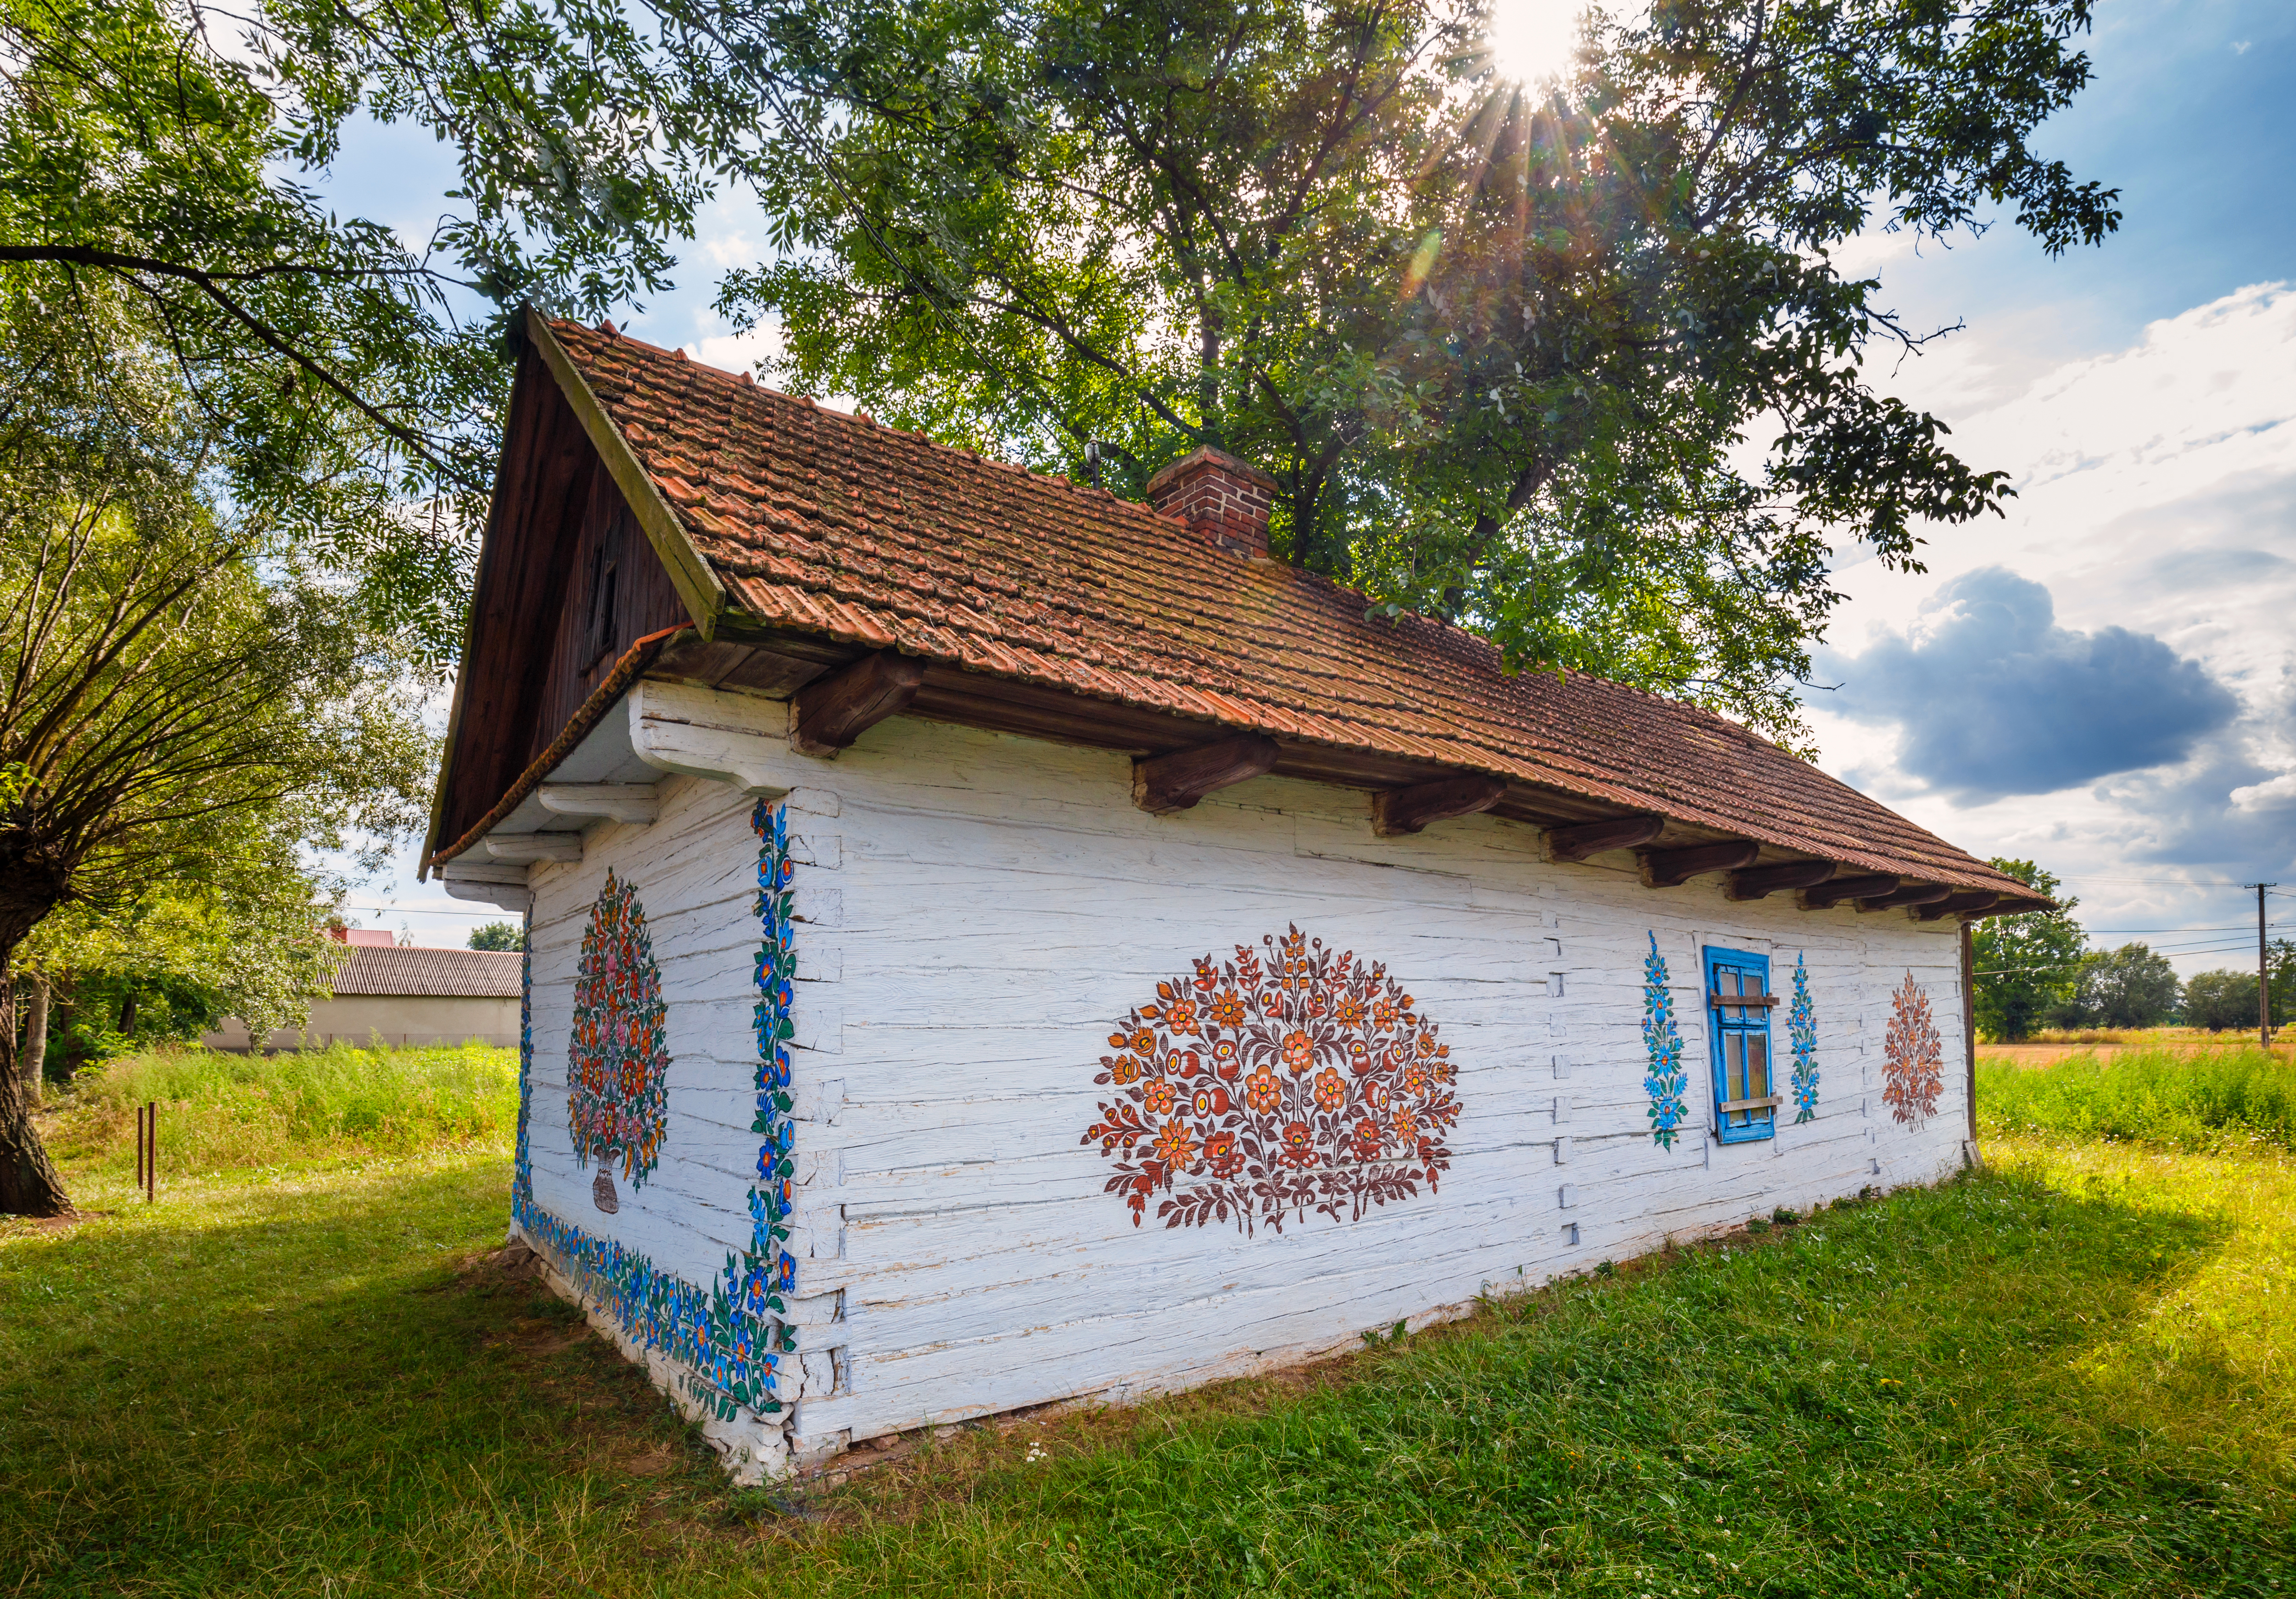 Biała chata z wymalowanym na ścianach kolorowym bukietem.